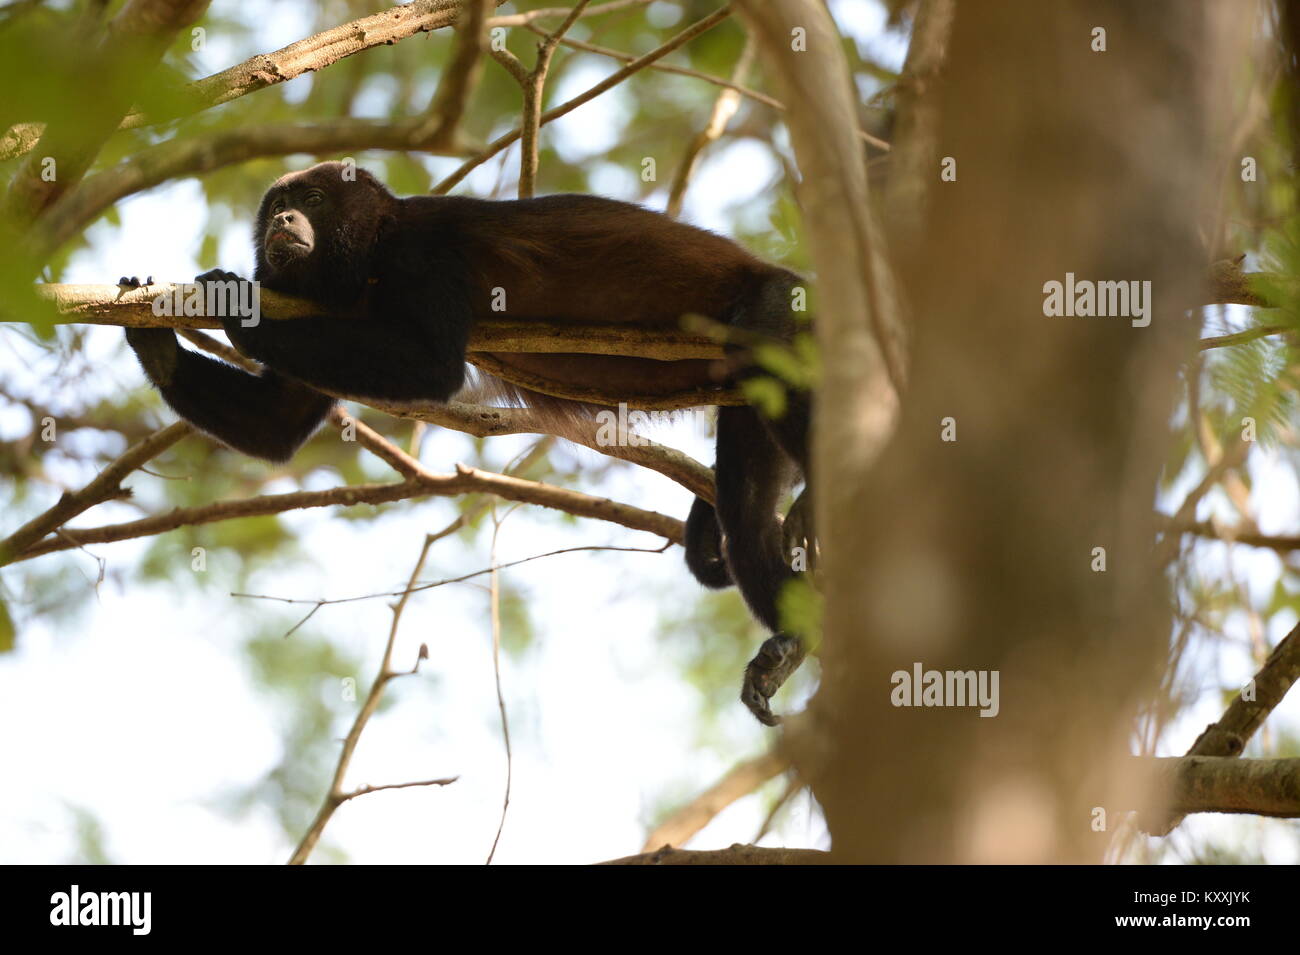 Los monos aulladores llevan una vida tranquila evitando el contacto humano en Costa Rica. El ruidoso masculino puede ser escuchado en días de descanso en unos pocos lugares en la Península de Nicoya Foto de stock